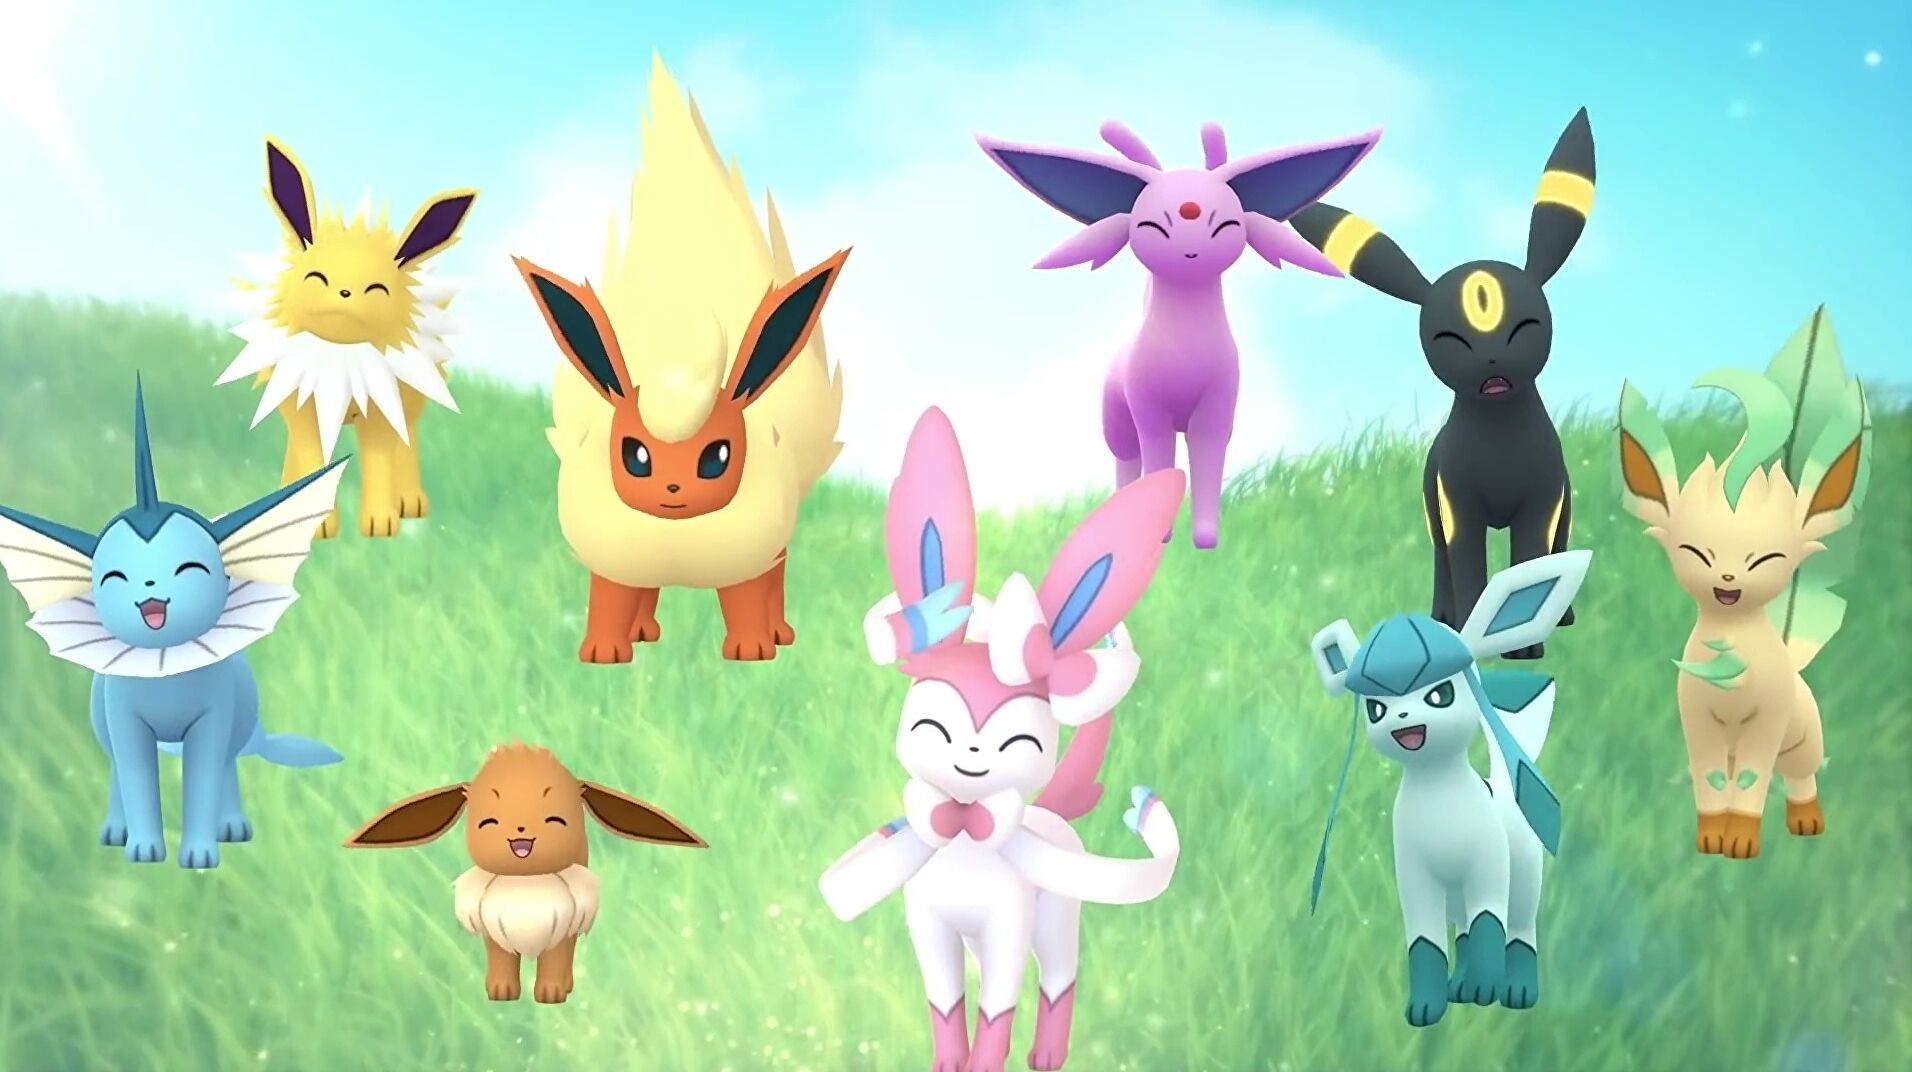 Imagen para Pokémon Go: Evoluciones de Eevee - Evolucionar a Eevee a Sylveon, Leafeon, Glaceon, Umbreon, Espeon, Vaporeon, Jolteon y Flareon